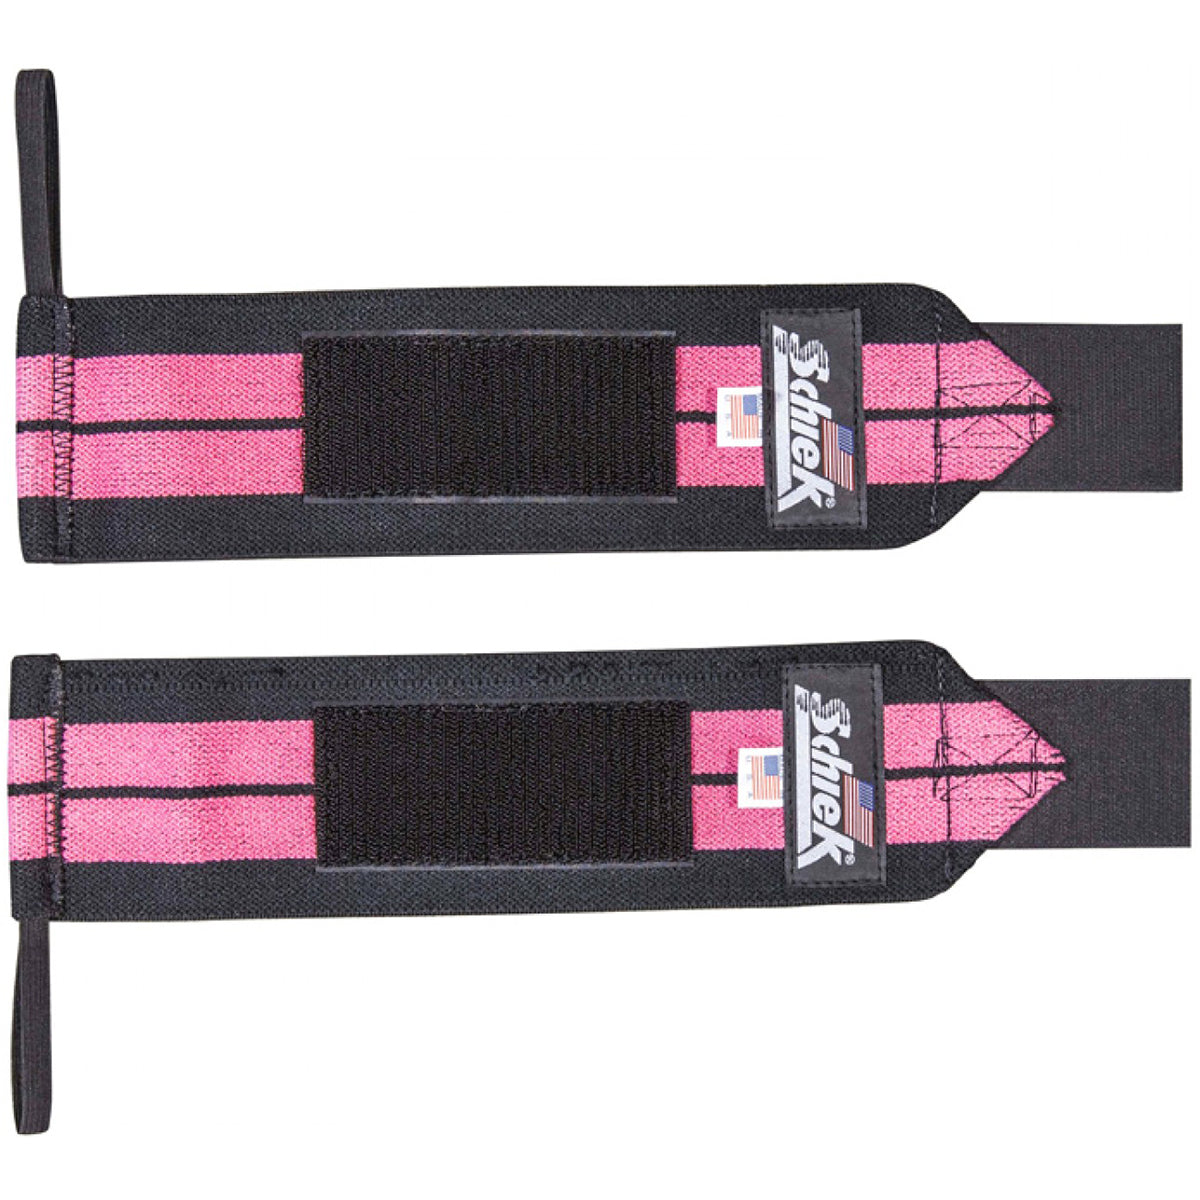 Schiek Sports Model 1112 Heavy Duty 12" Wrist Wraps - Pink/Black Schiek Sports